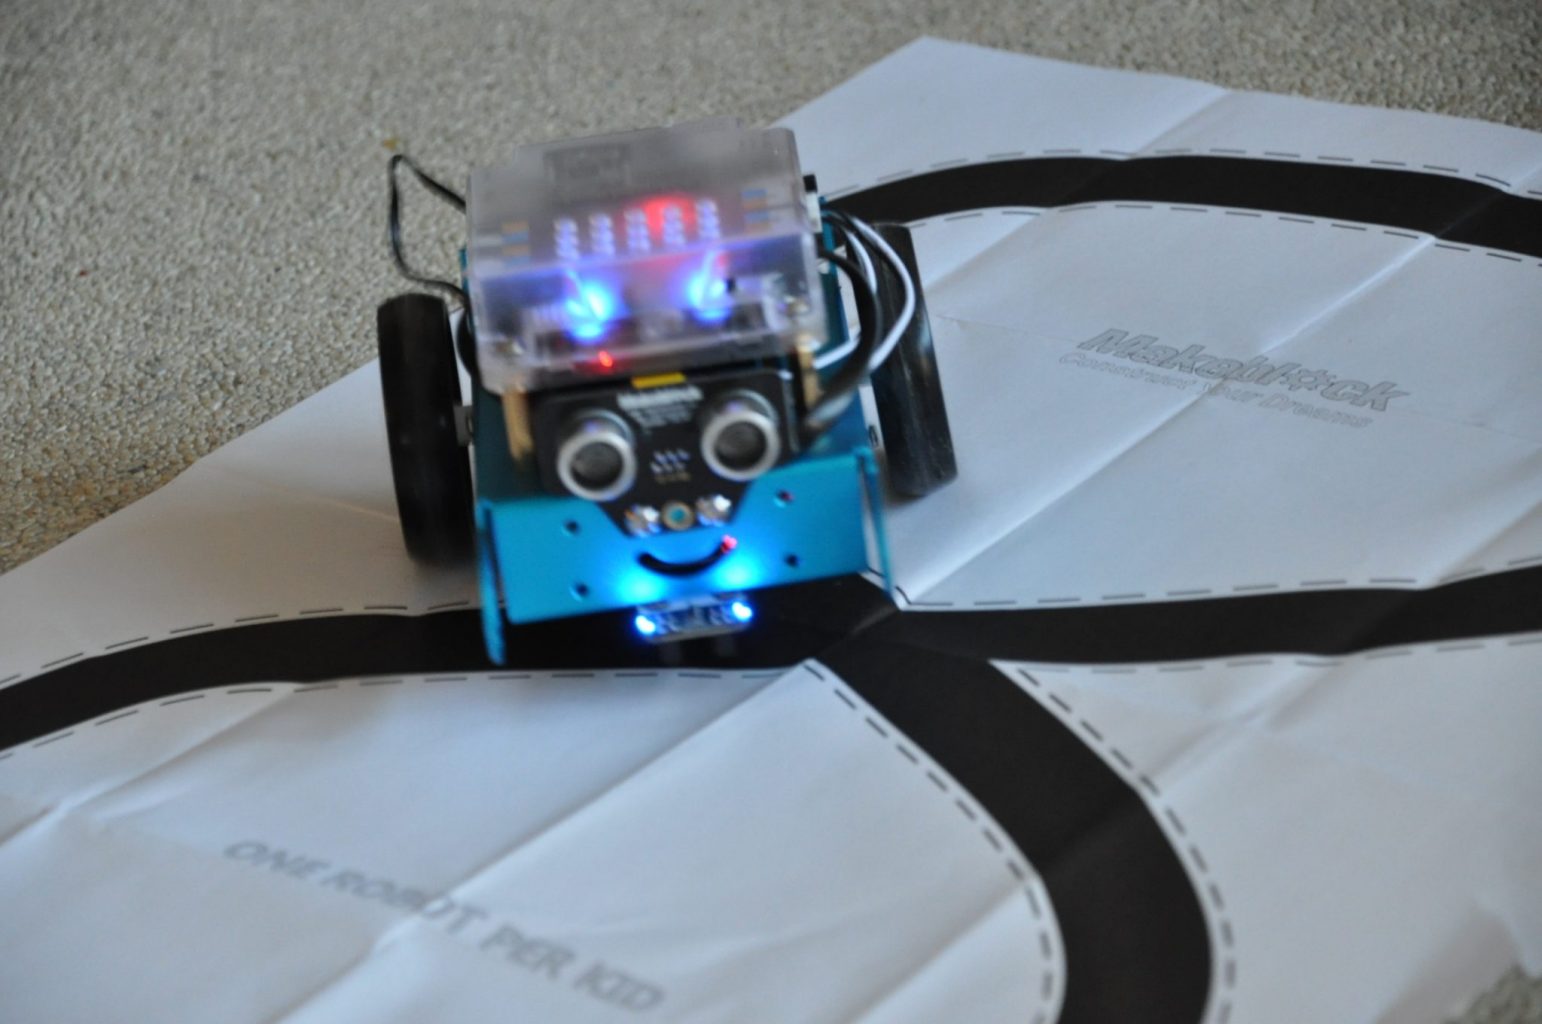 mbot robot makeblock bouwen